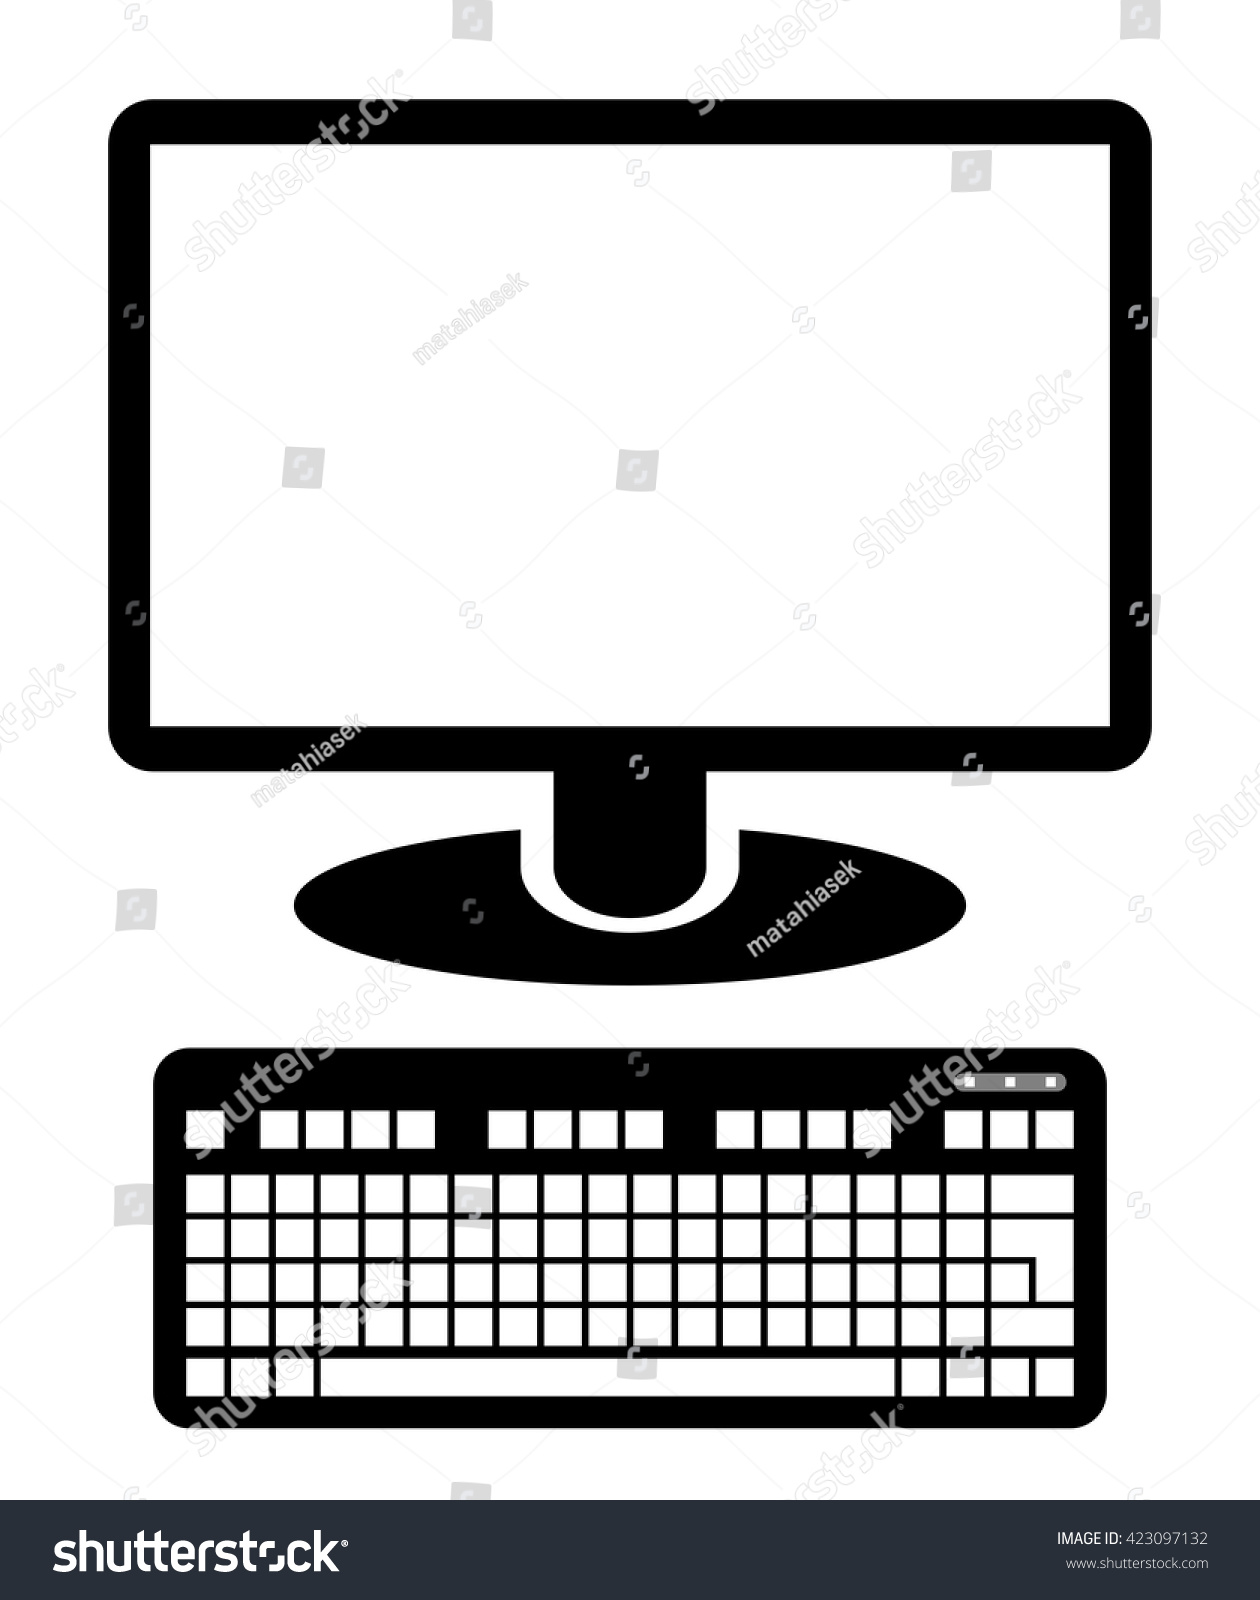 computer clip art logo - photo #32